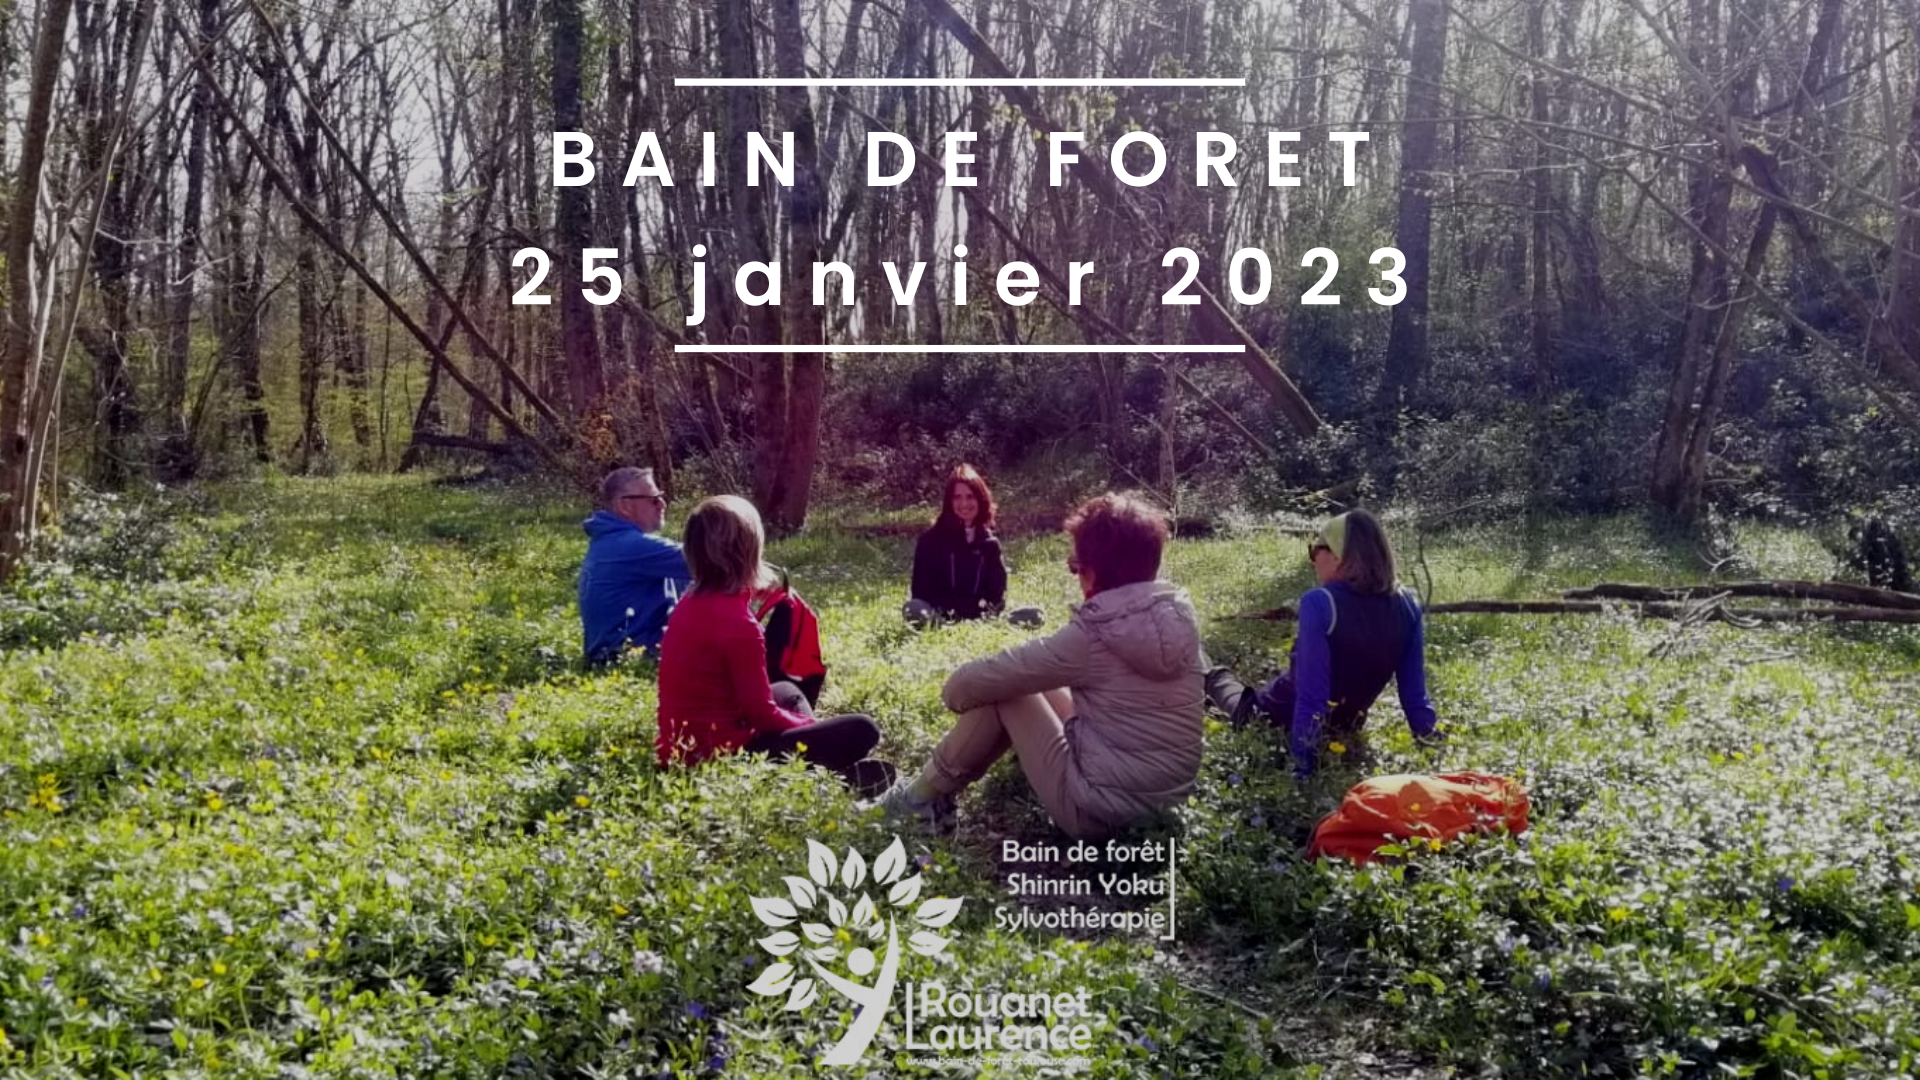 Bain de forêt du 25 janvier 2023 : offrez vous une parenthèse de bien être, de détente, de respiration, de reconnexion à soi et à la nature durant deux heures d'immersion en forêt.